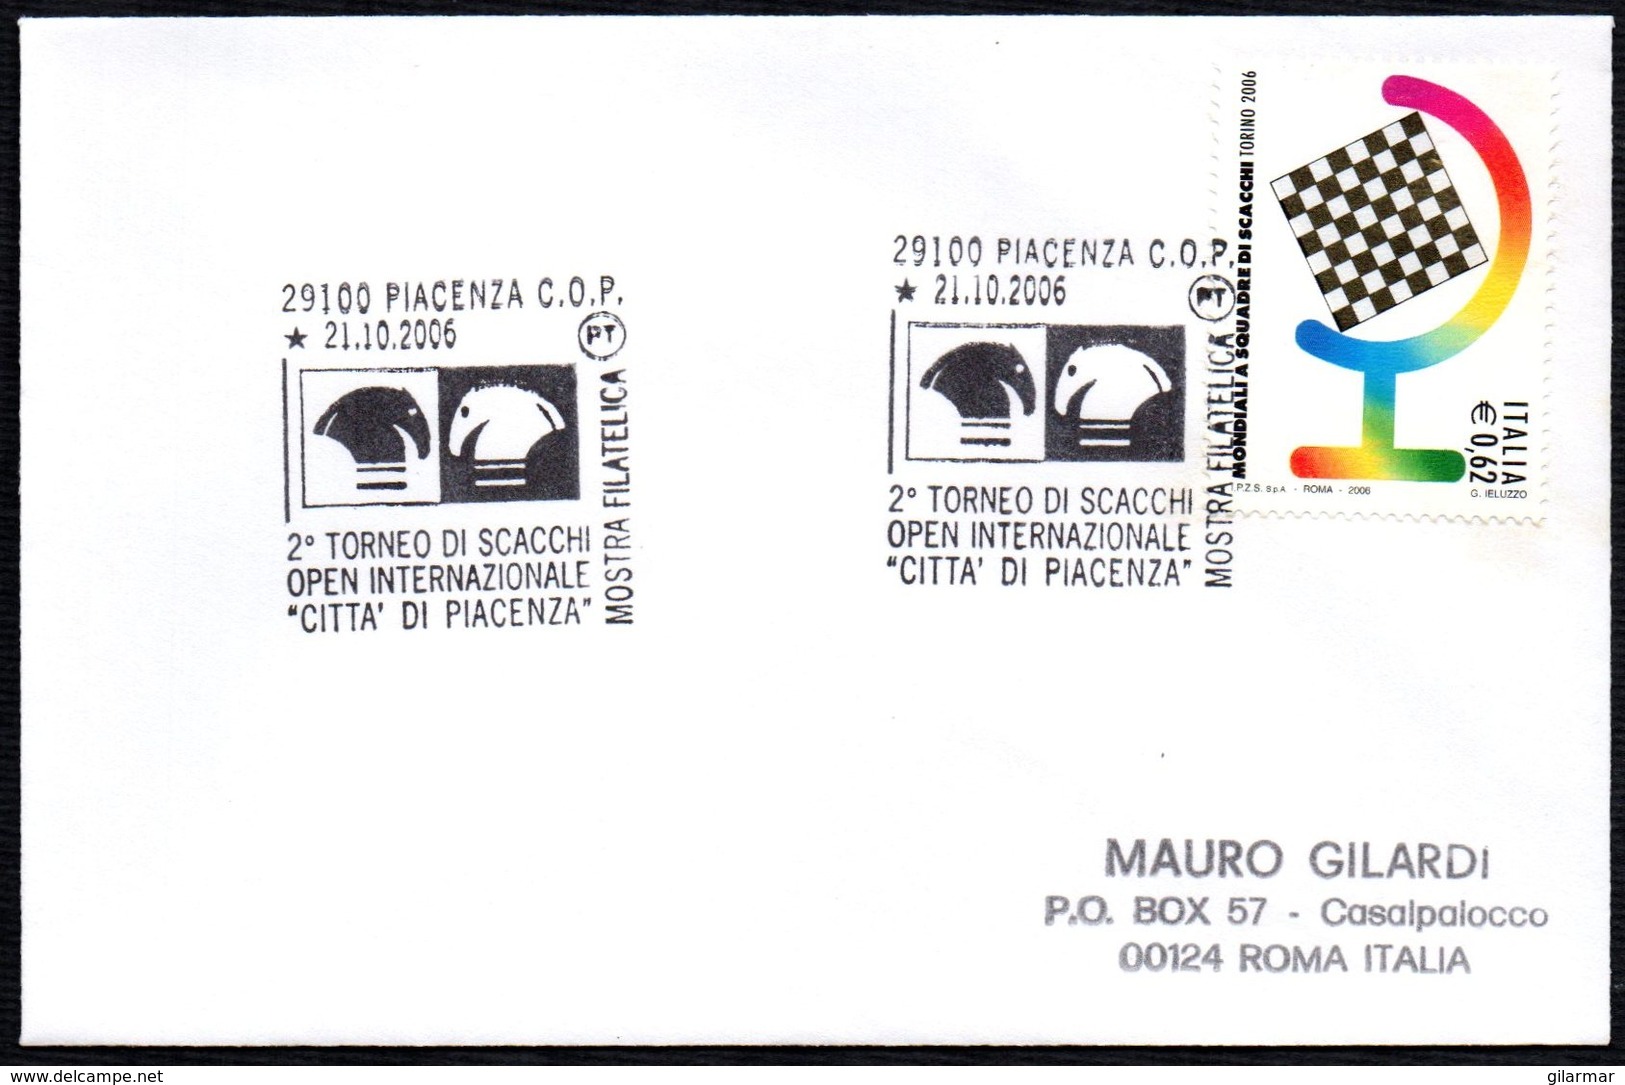 CHESS - ITALIA PIACENZA 2006 - 2° TORNEO OPEN INTERNAZIONALE DI SCACCHI CITTA' DI PIACENZA - MOSTRA FILATELICA - CARD - Scacchi